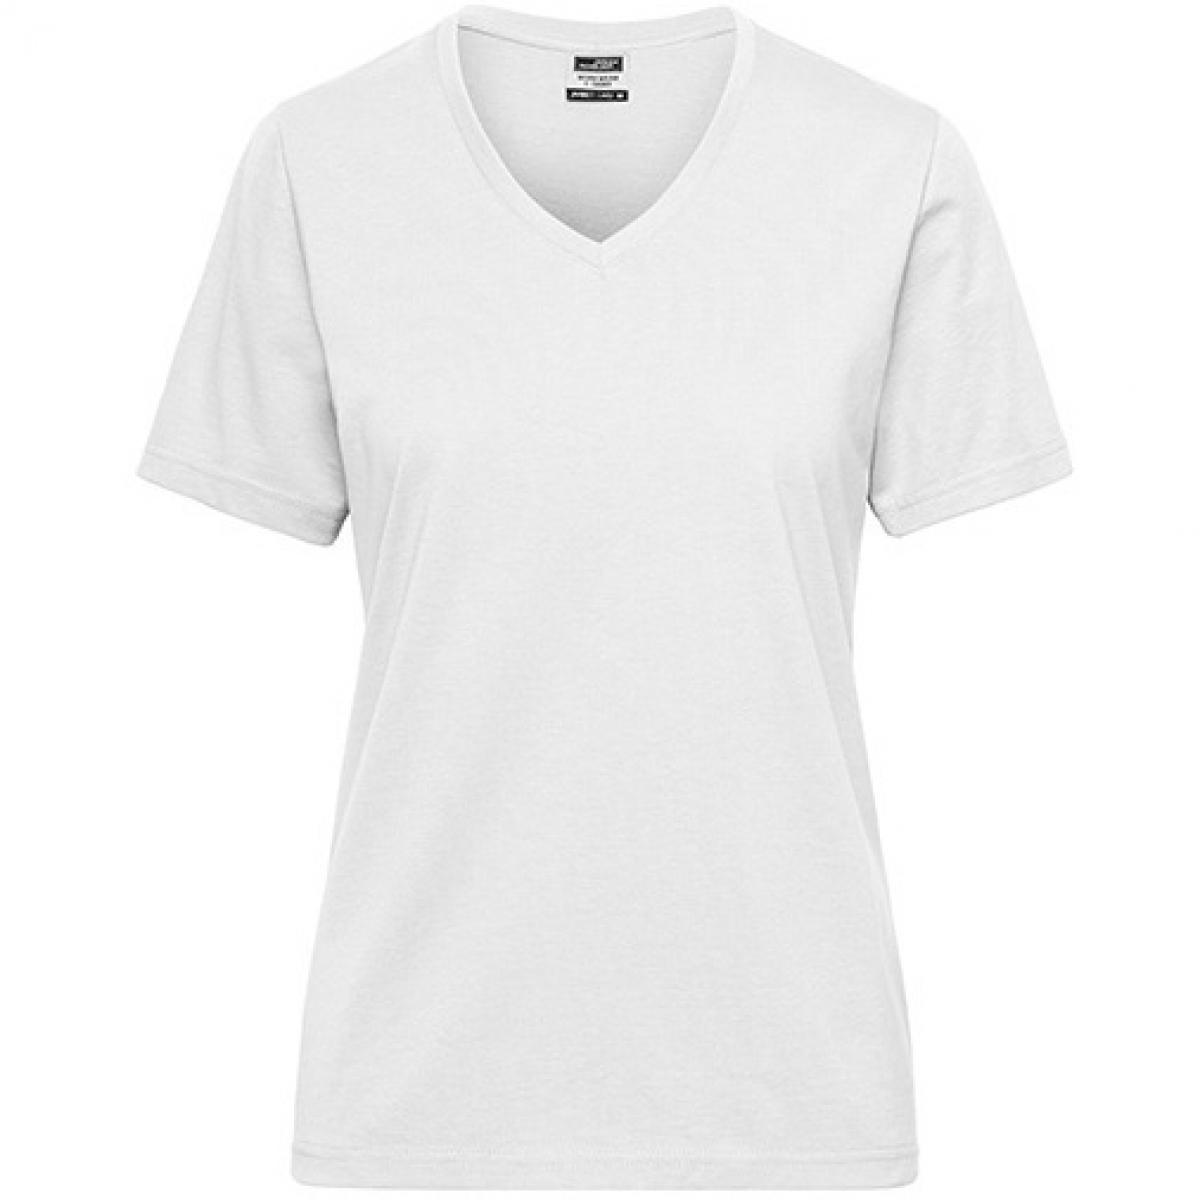 Hersteller: James+Nicholson Herstellernummer: JN1807 Artikelbezeichnung: Ladies‘ BIO Workwear T-Shirt / Damen T-Shirt - Waschbar 60C Farbe: White